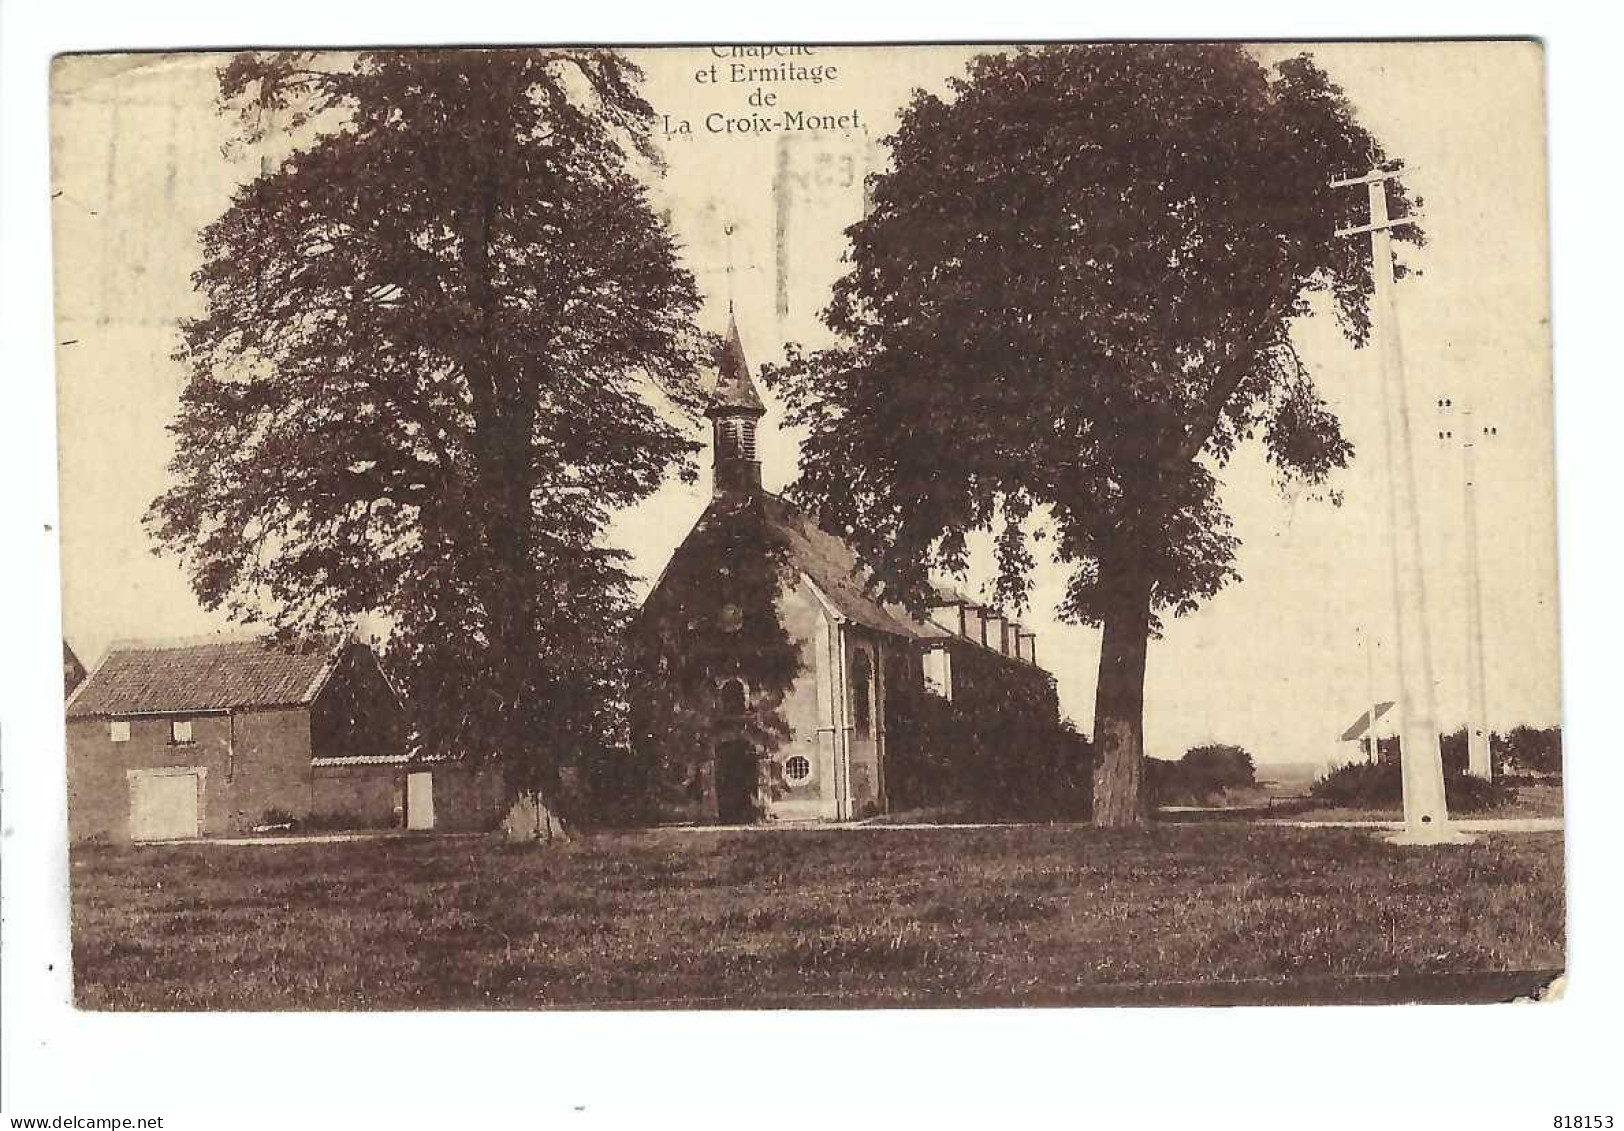 La Croix-Monet    Chapelle Et Ermitage  1926 - Eghezée